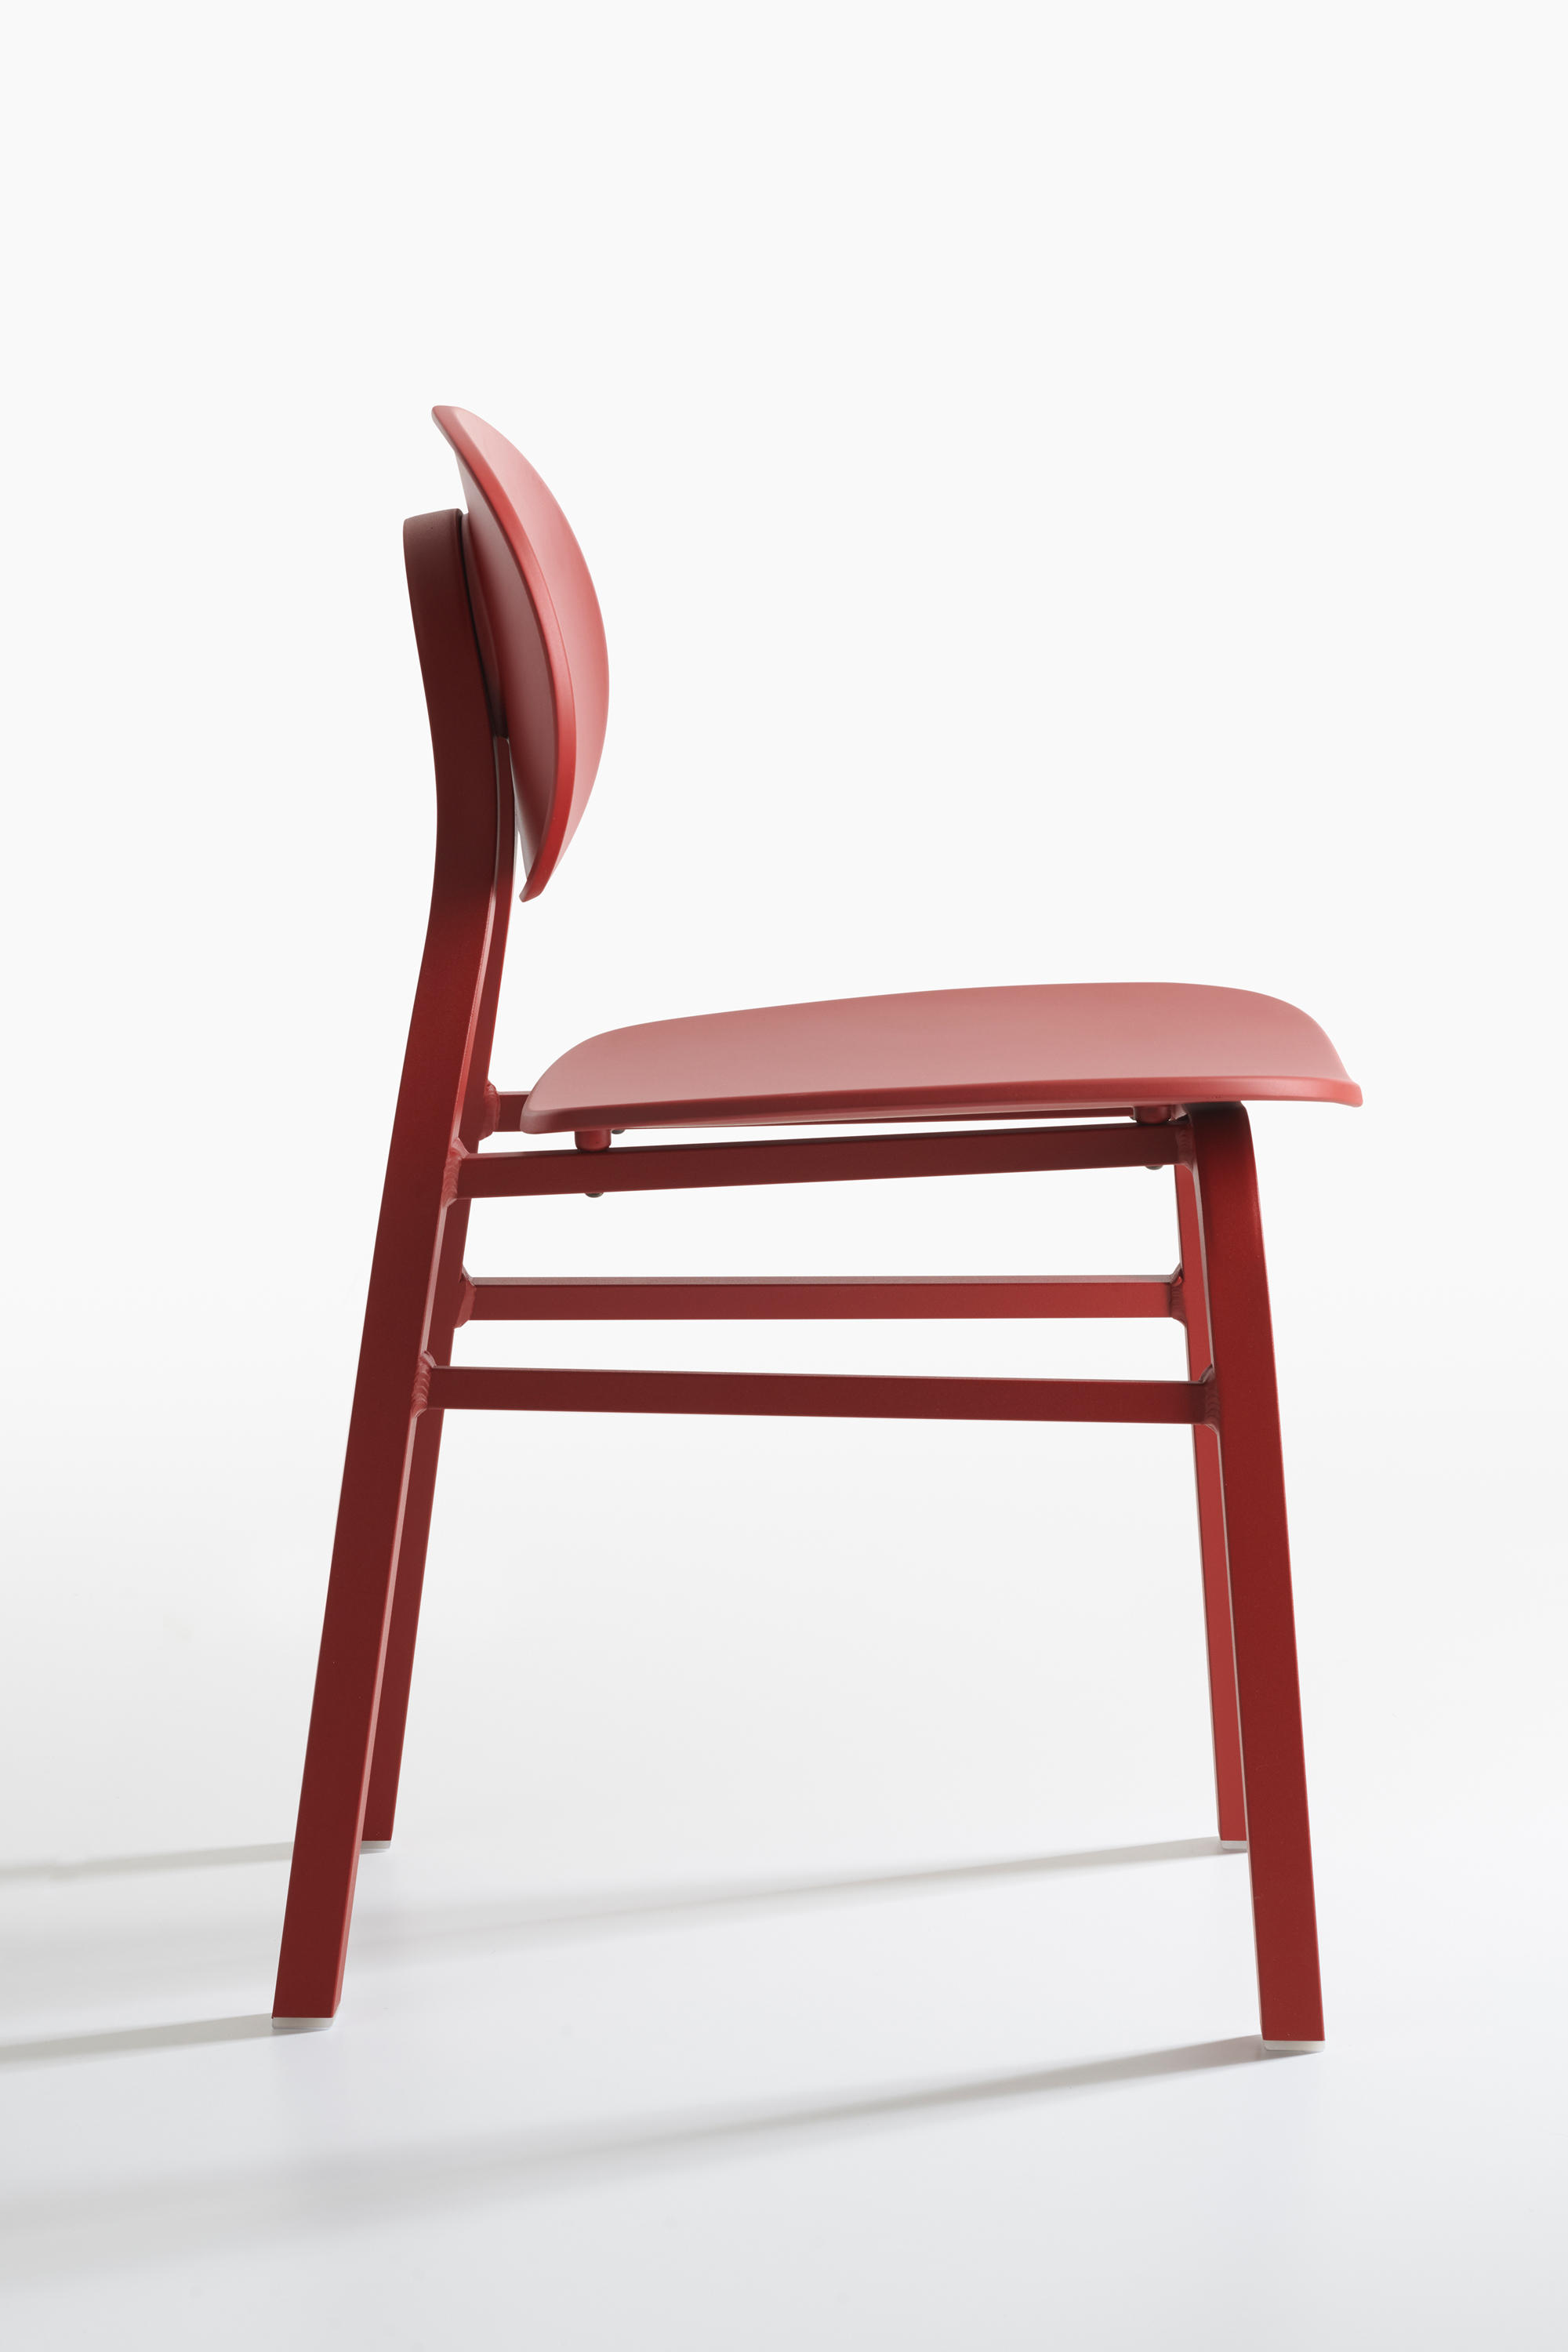 Elipse 2052 Chairs From Zanotta Architonic